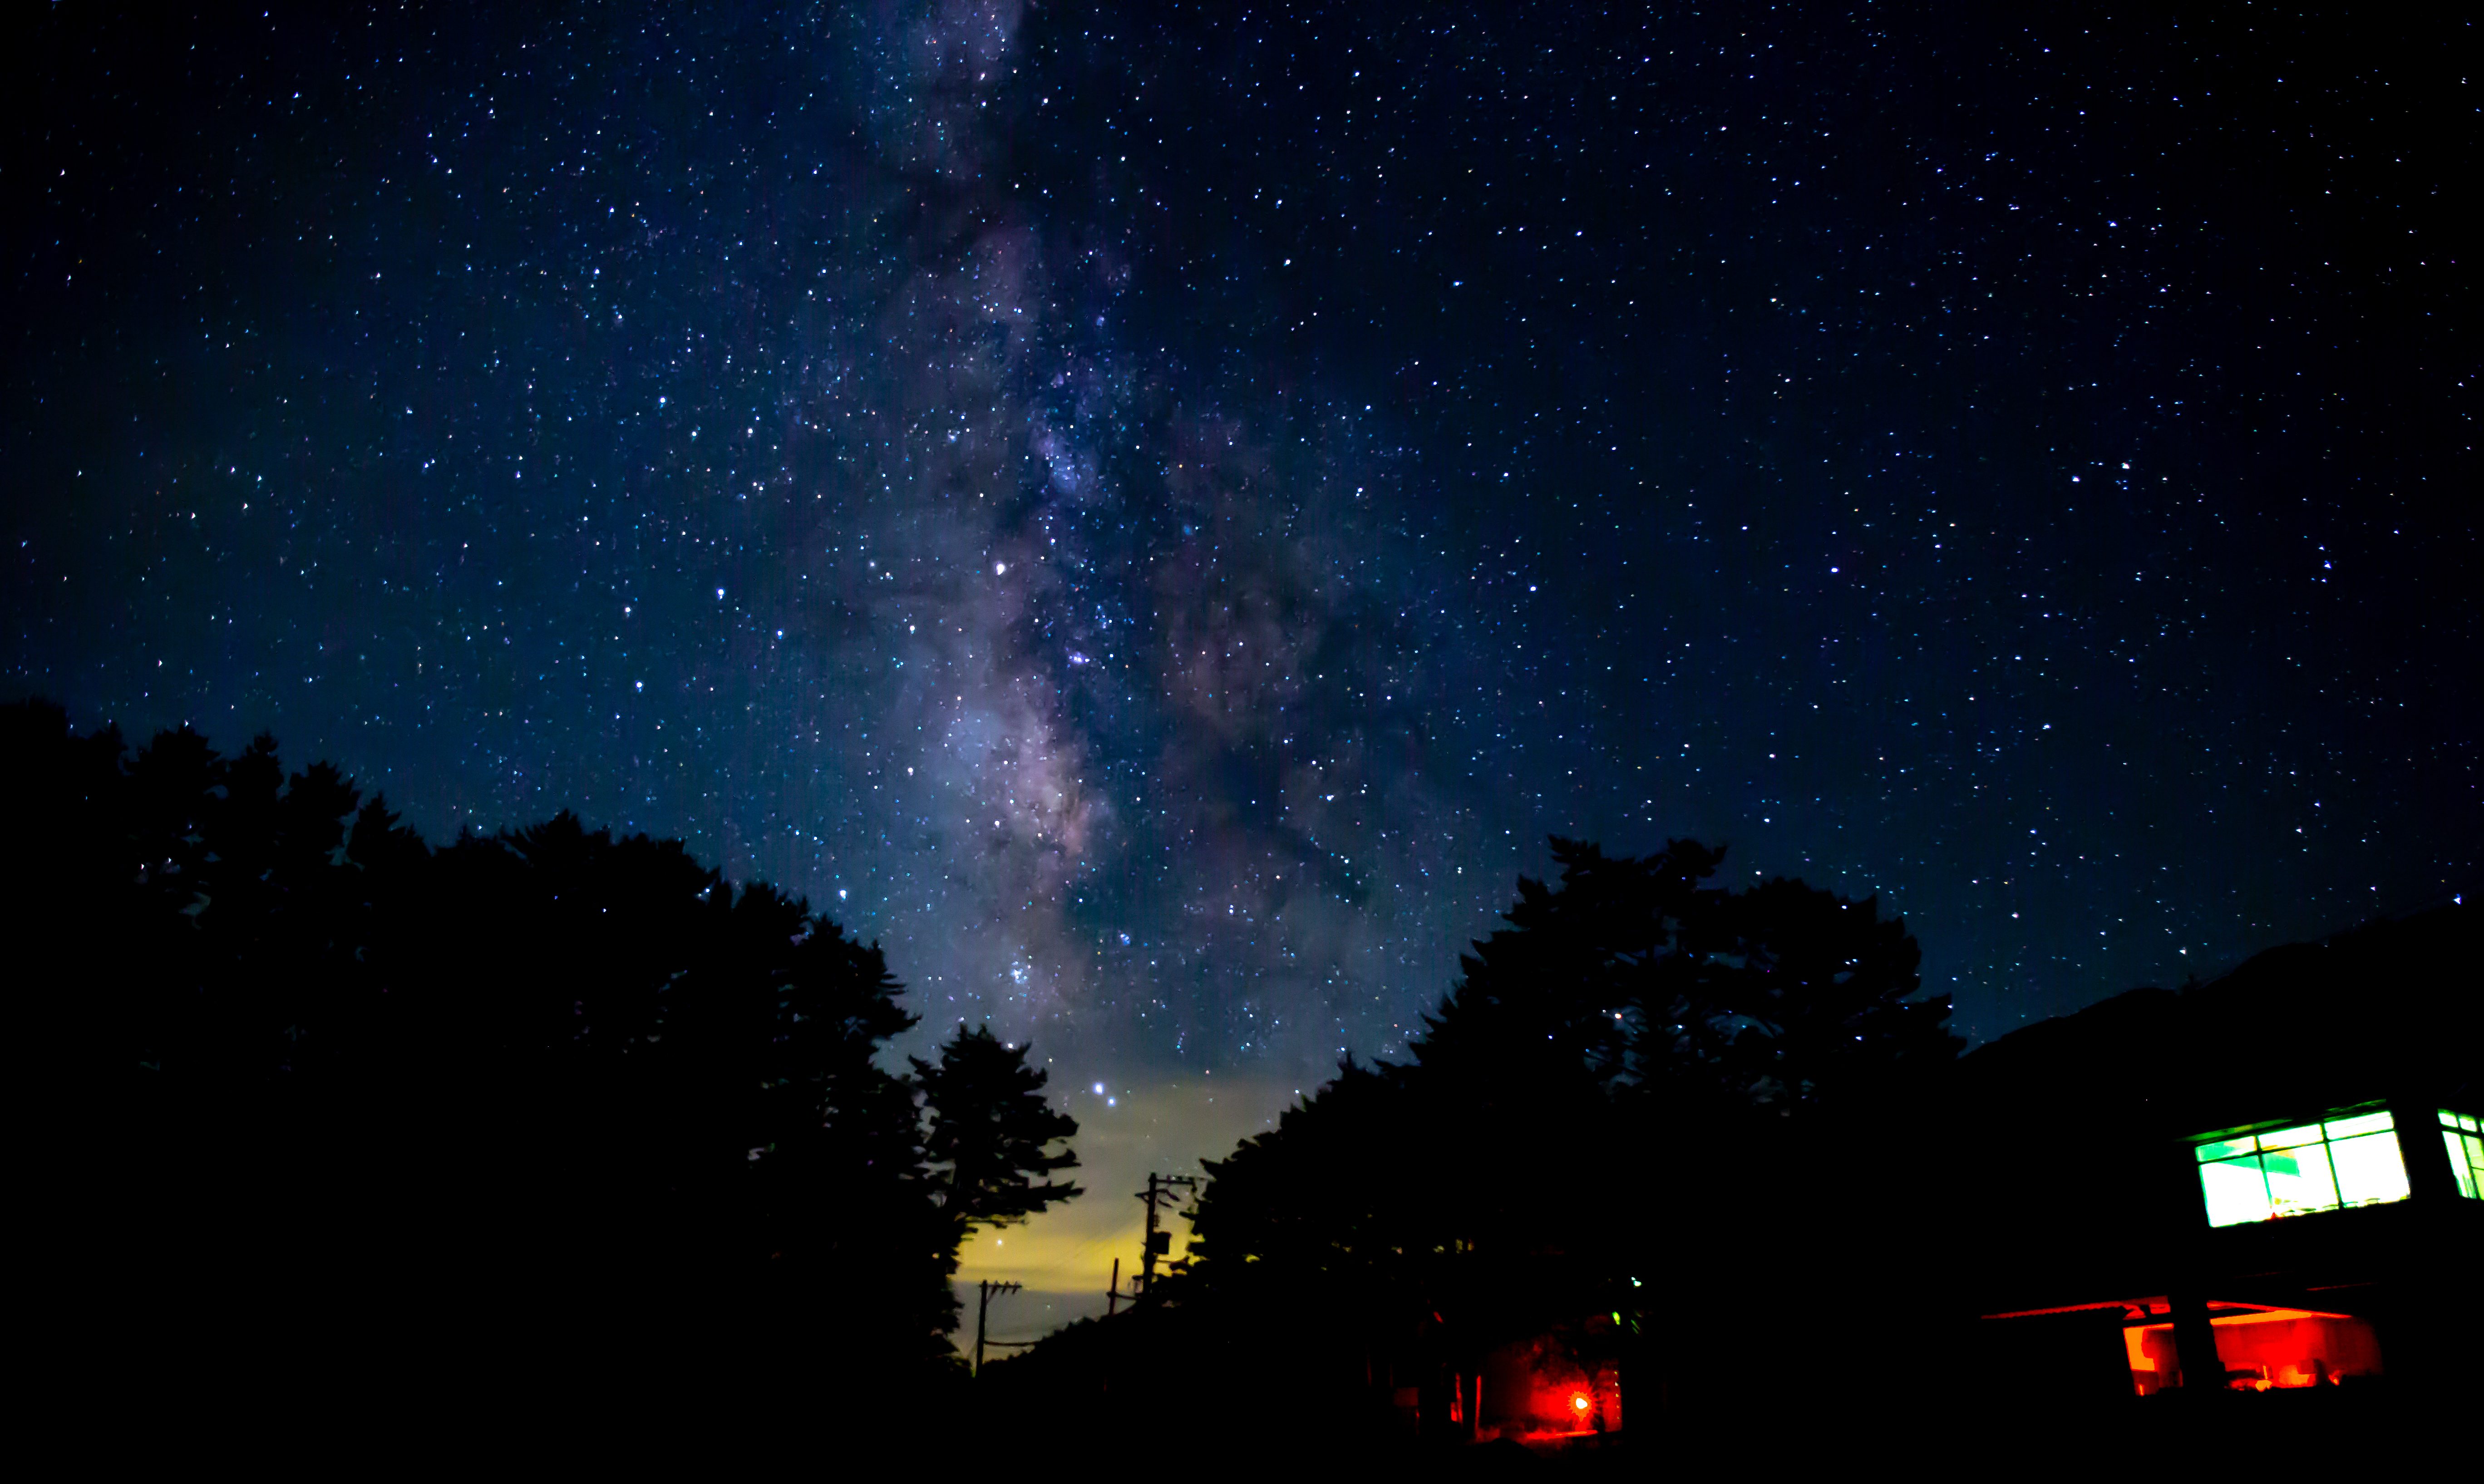 恐羅漢イベント情報 Blog Archive 星空観察会 月のクレーターを望遠鏡でハッキリ観測 画像 広島恐羅漢でキレイな夜空